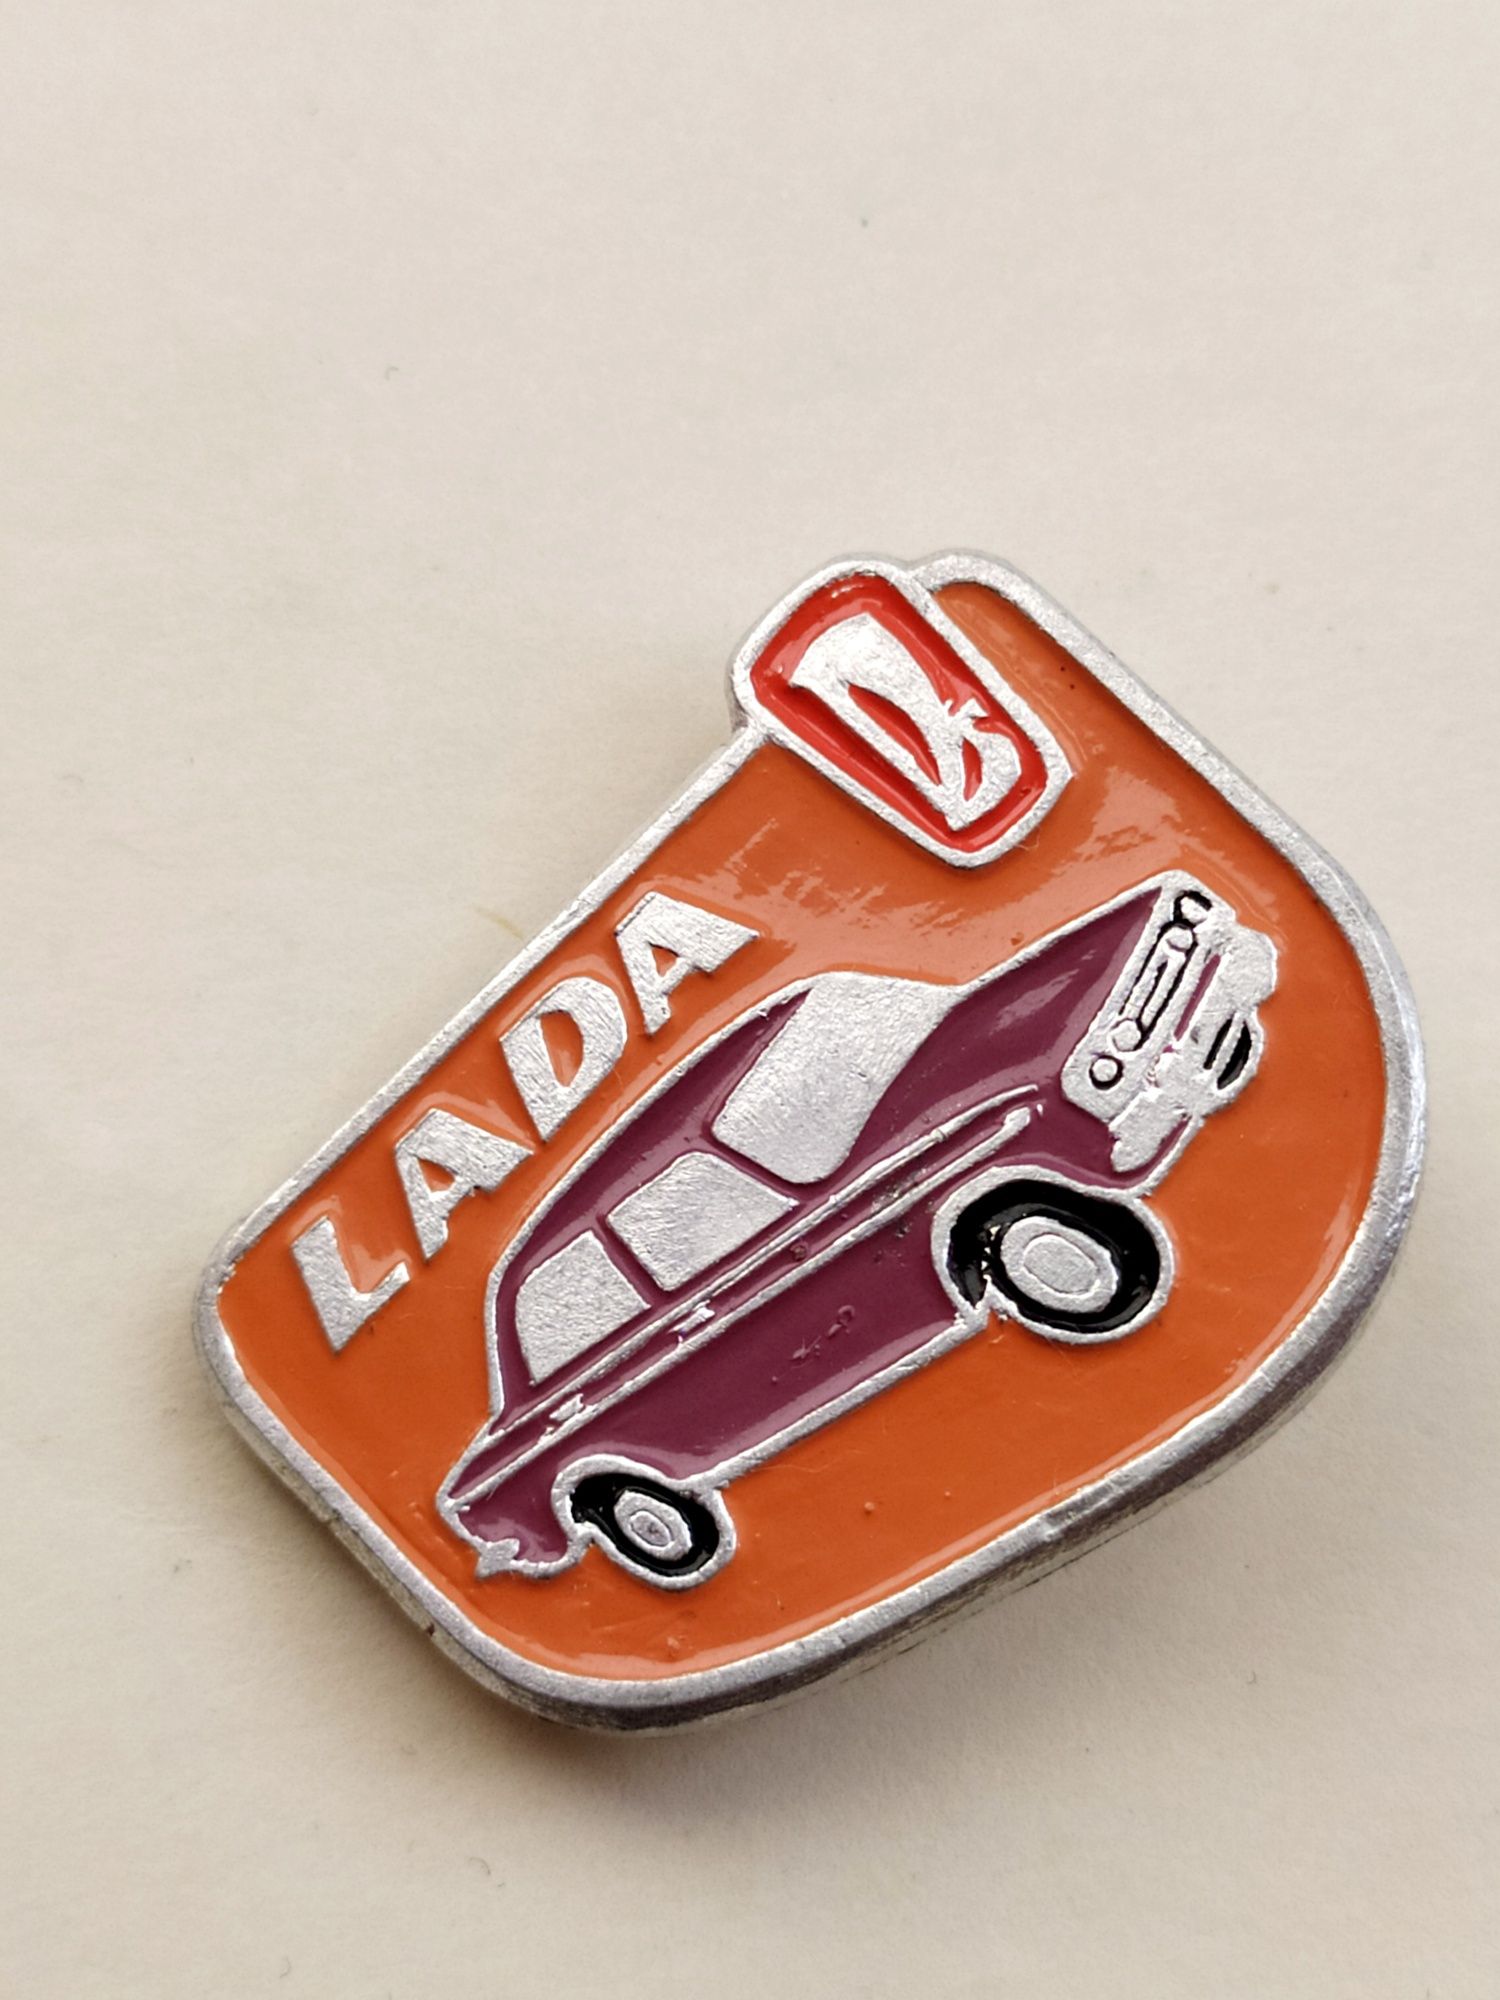 Малиновая Лада Lada Жигули 2106 автомобильный значок эмблема СССР